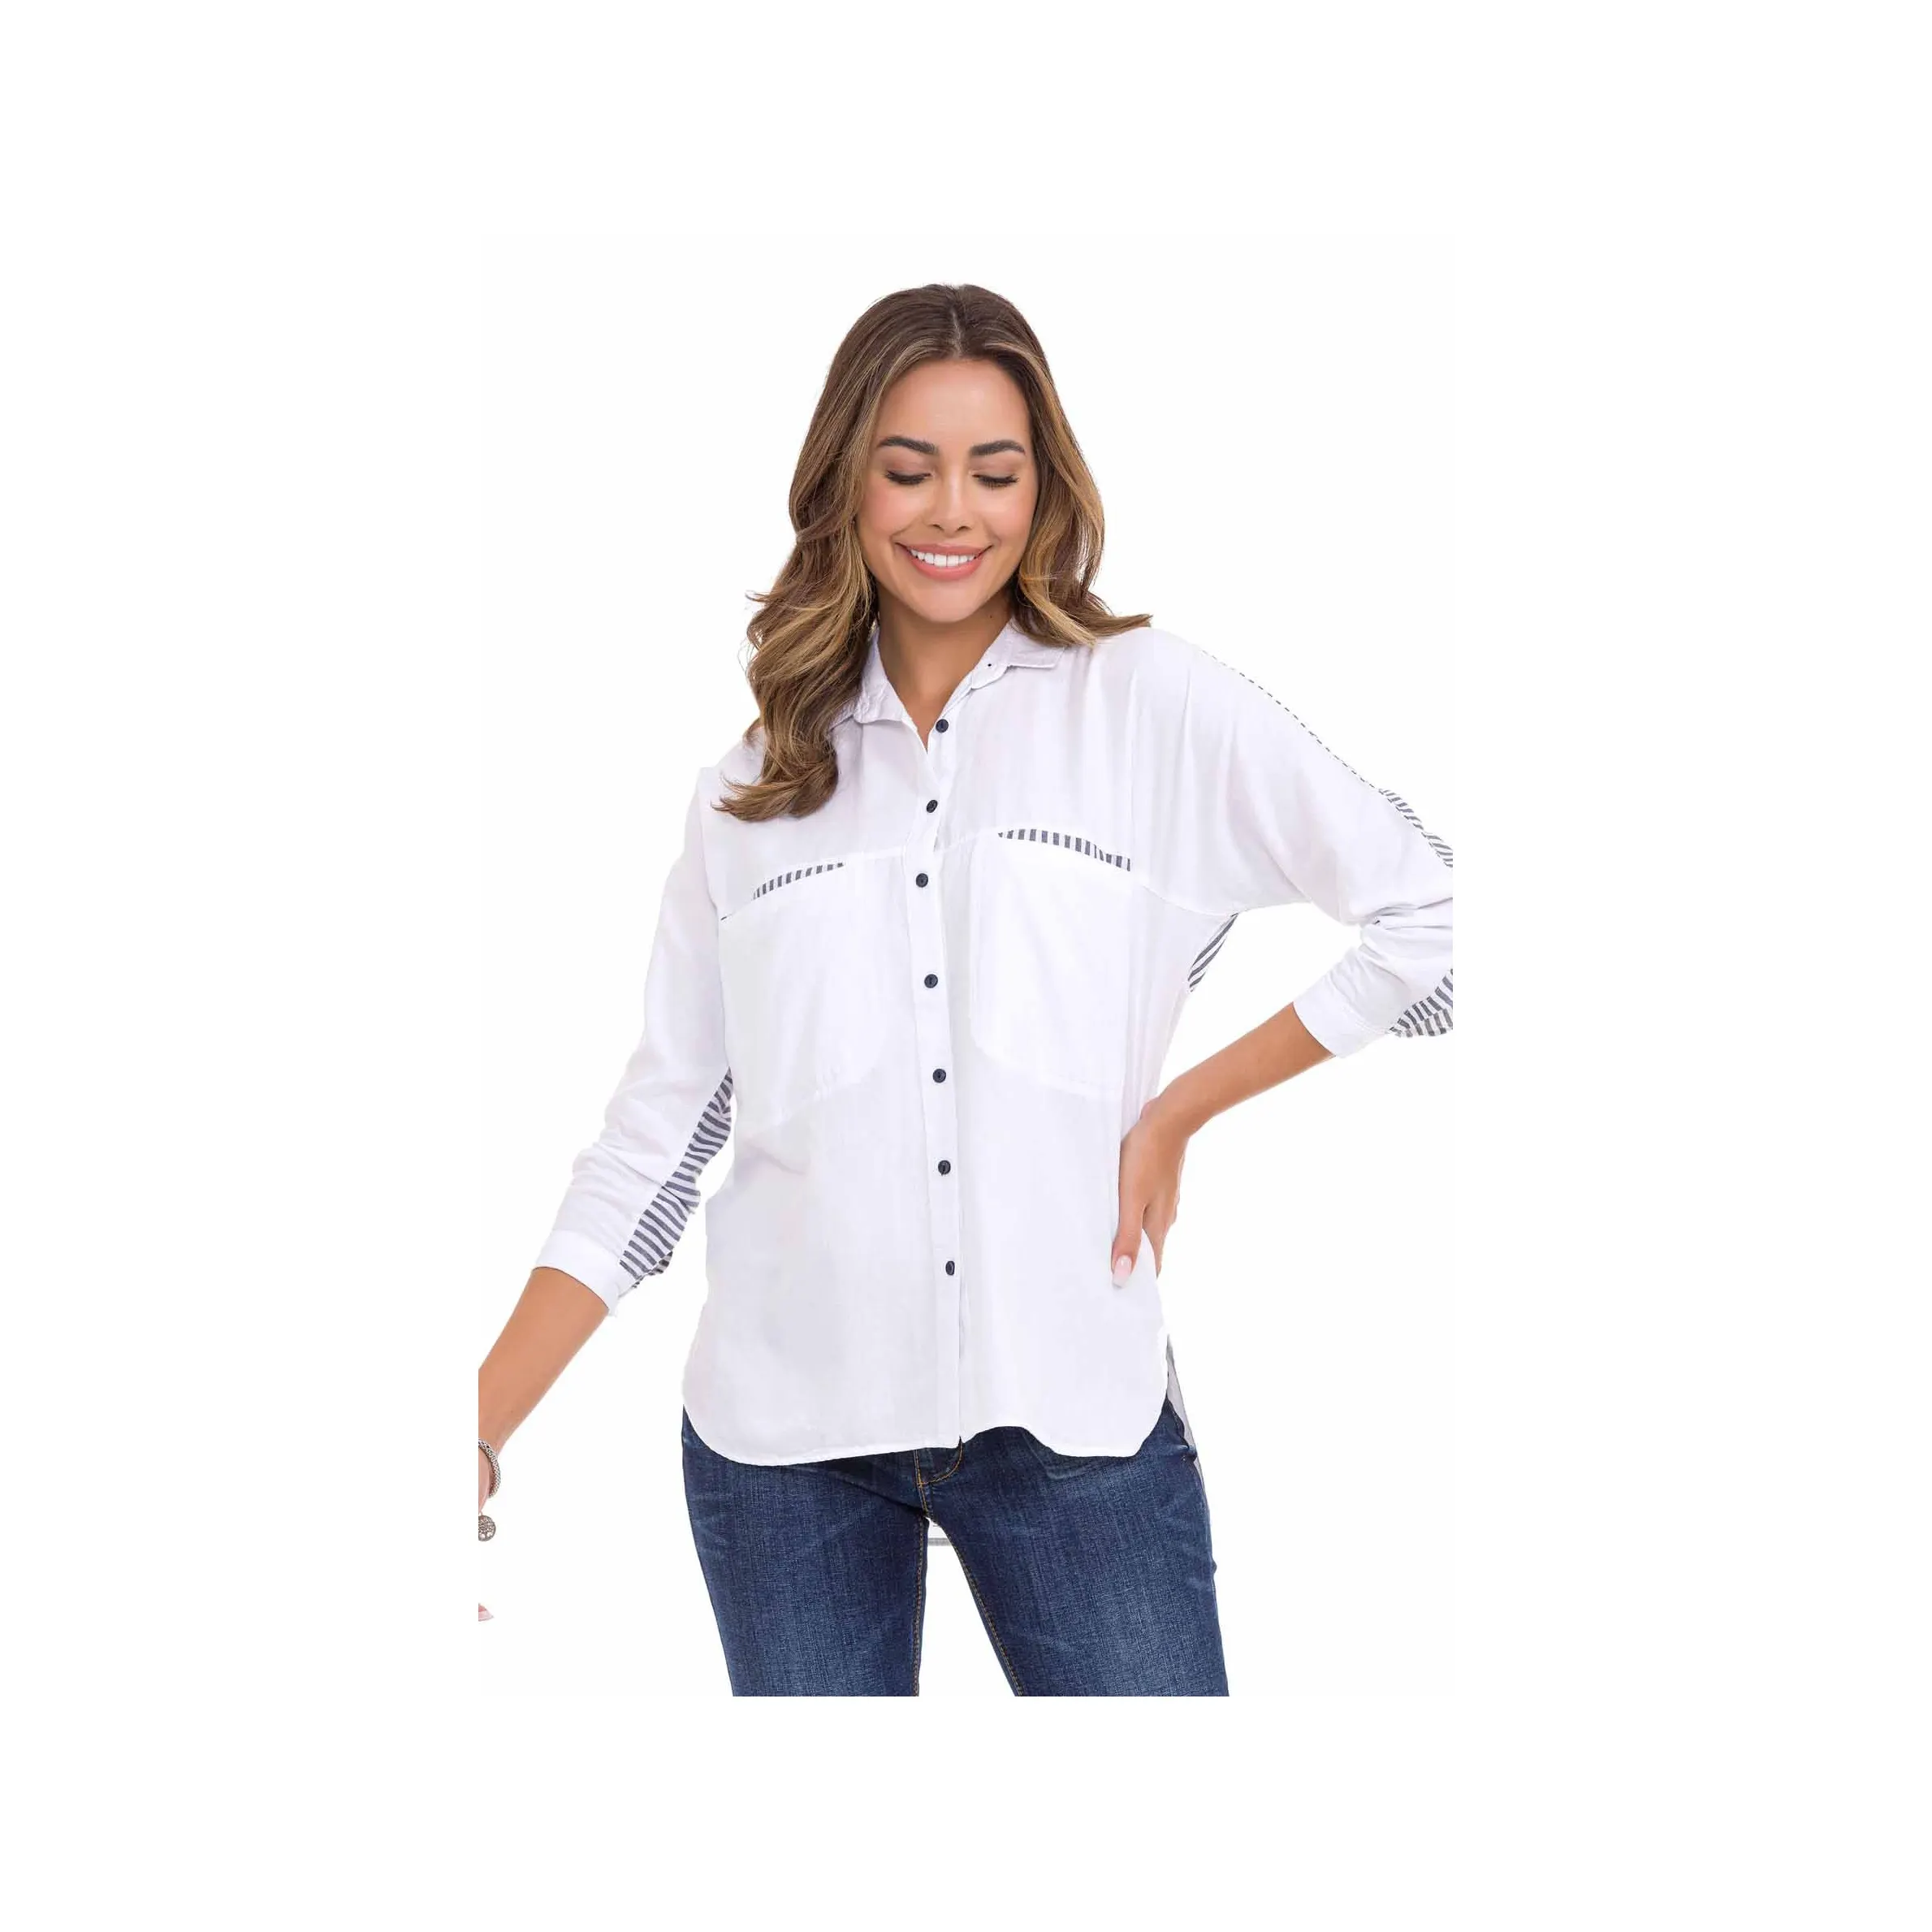 Toptan fiyata mevcut en son koleksiyon kadın gömlek tam kollu düz renk gömlek